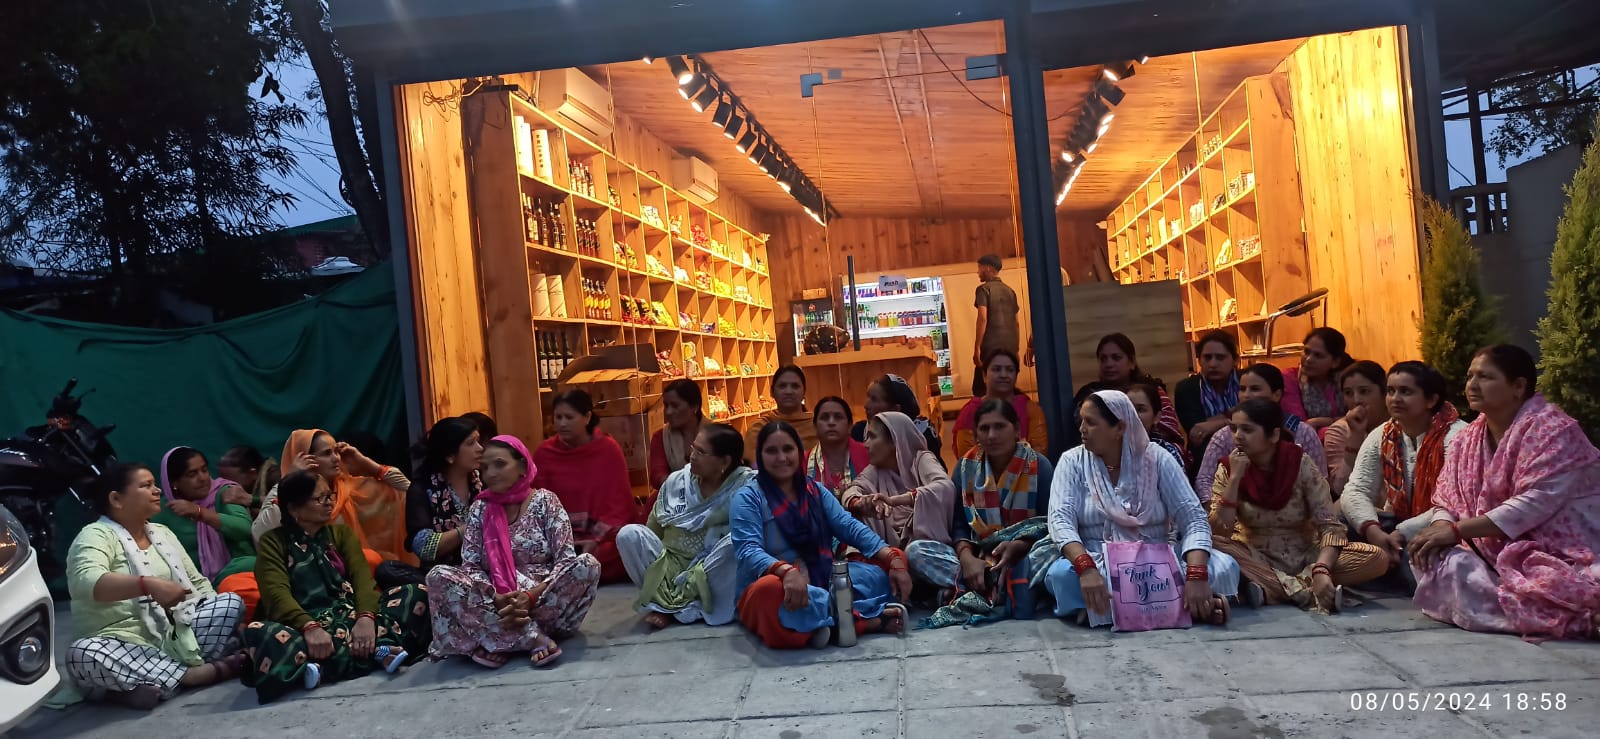 मसूरी भट्टा गांव में शराब की दुकान के विरोध में महिलाओं ने सरकार के खिलाफ की नारेबाजी